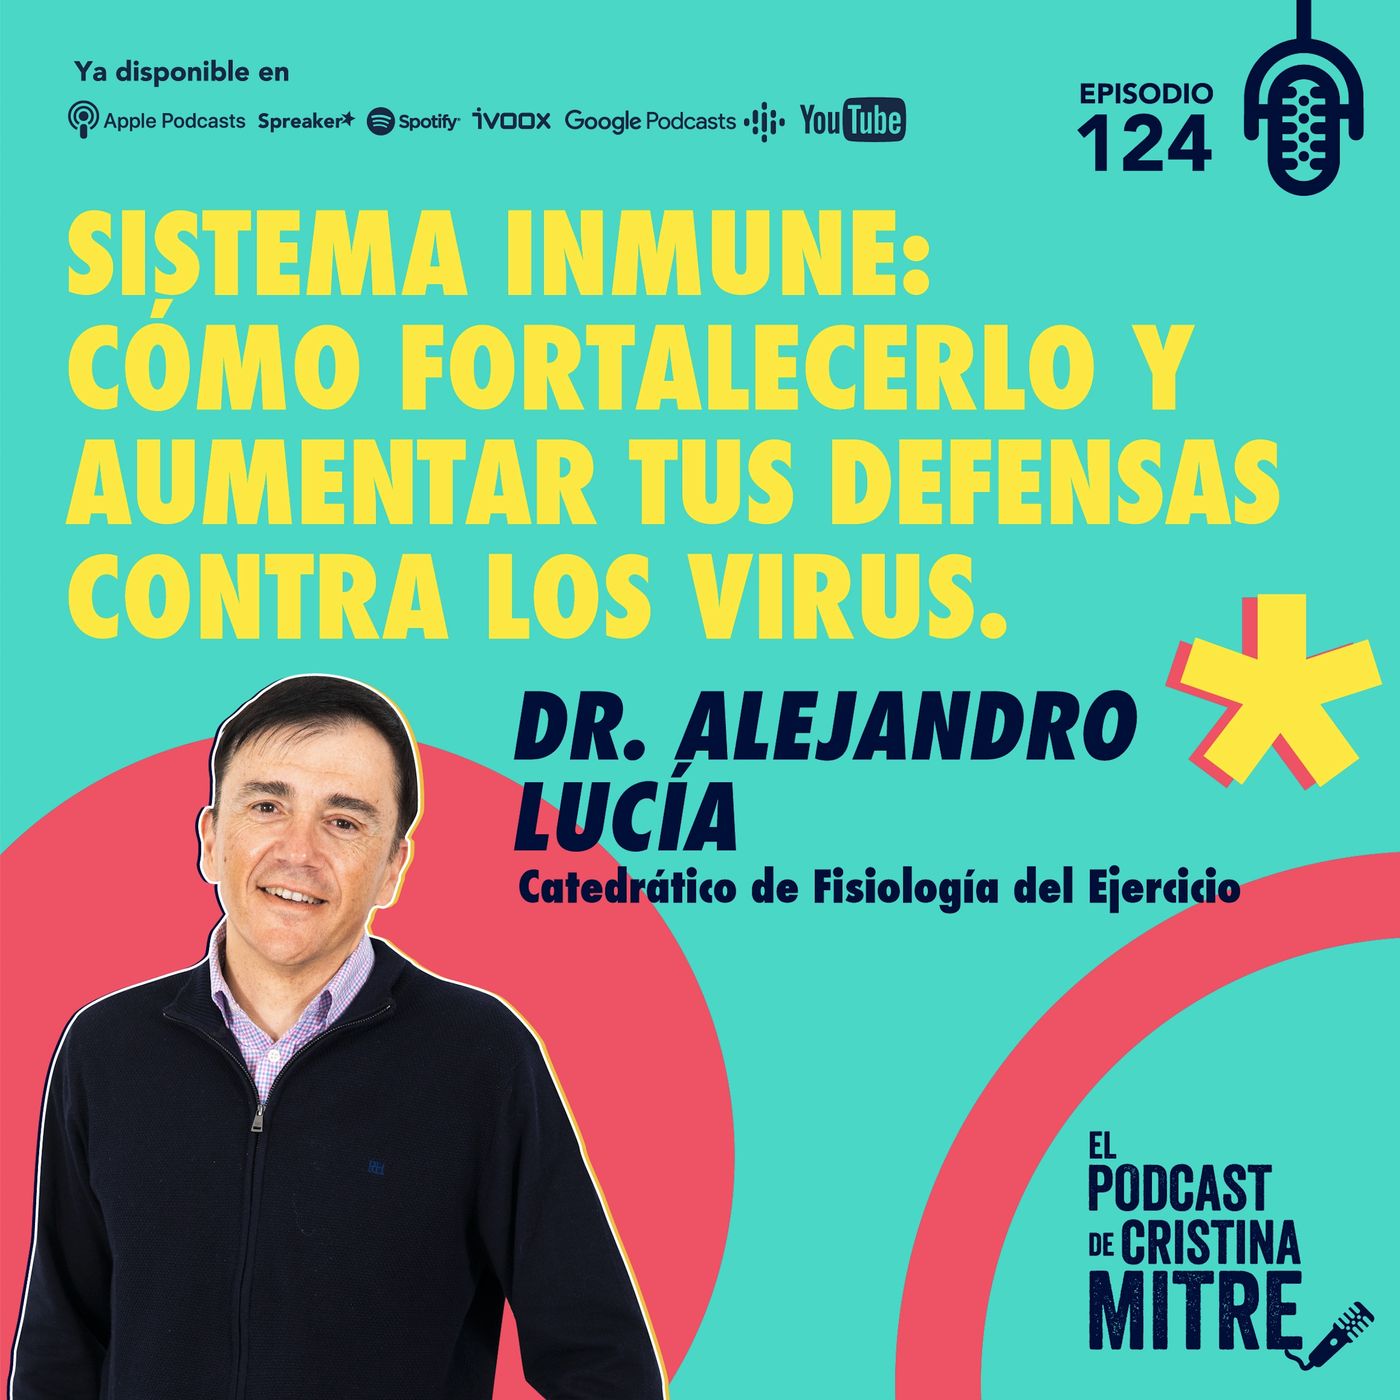 Sistema inmune: Cómo fortalecerlo y aumentar tus defensas contra los virus, con el Dr. Alejandro Lucía. Episodio 124